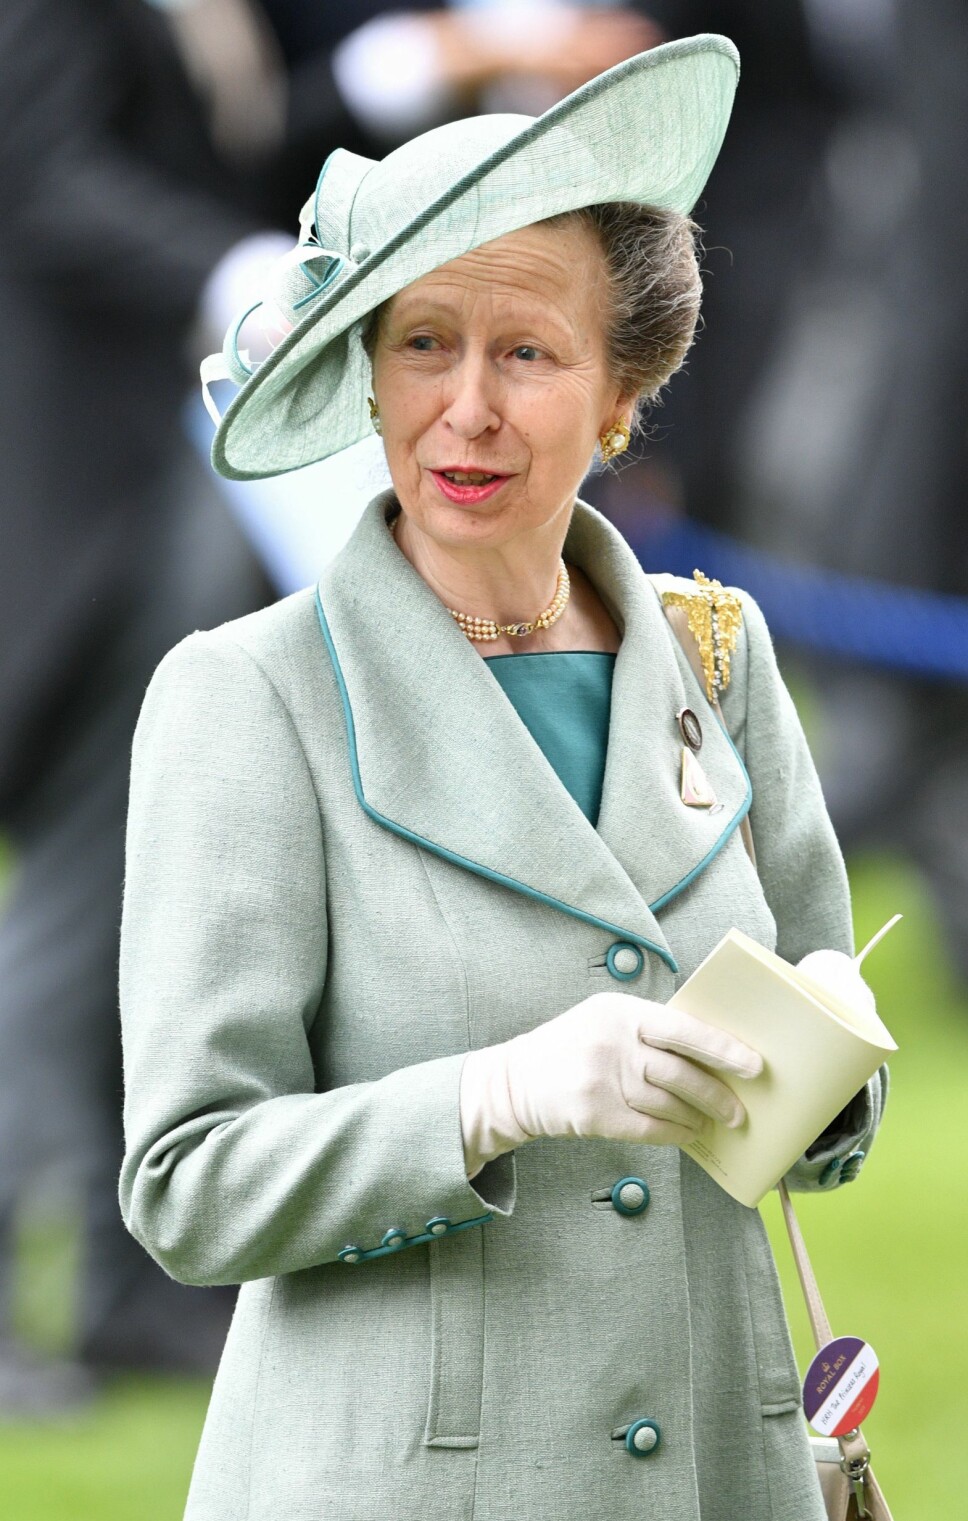 ARBEIDSOM: Prinsesse Anne jobber mest i det britiske kongehuset, uten å få noe særlig omtale eller ros.